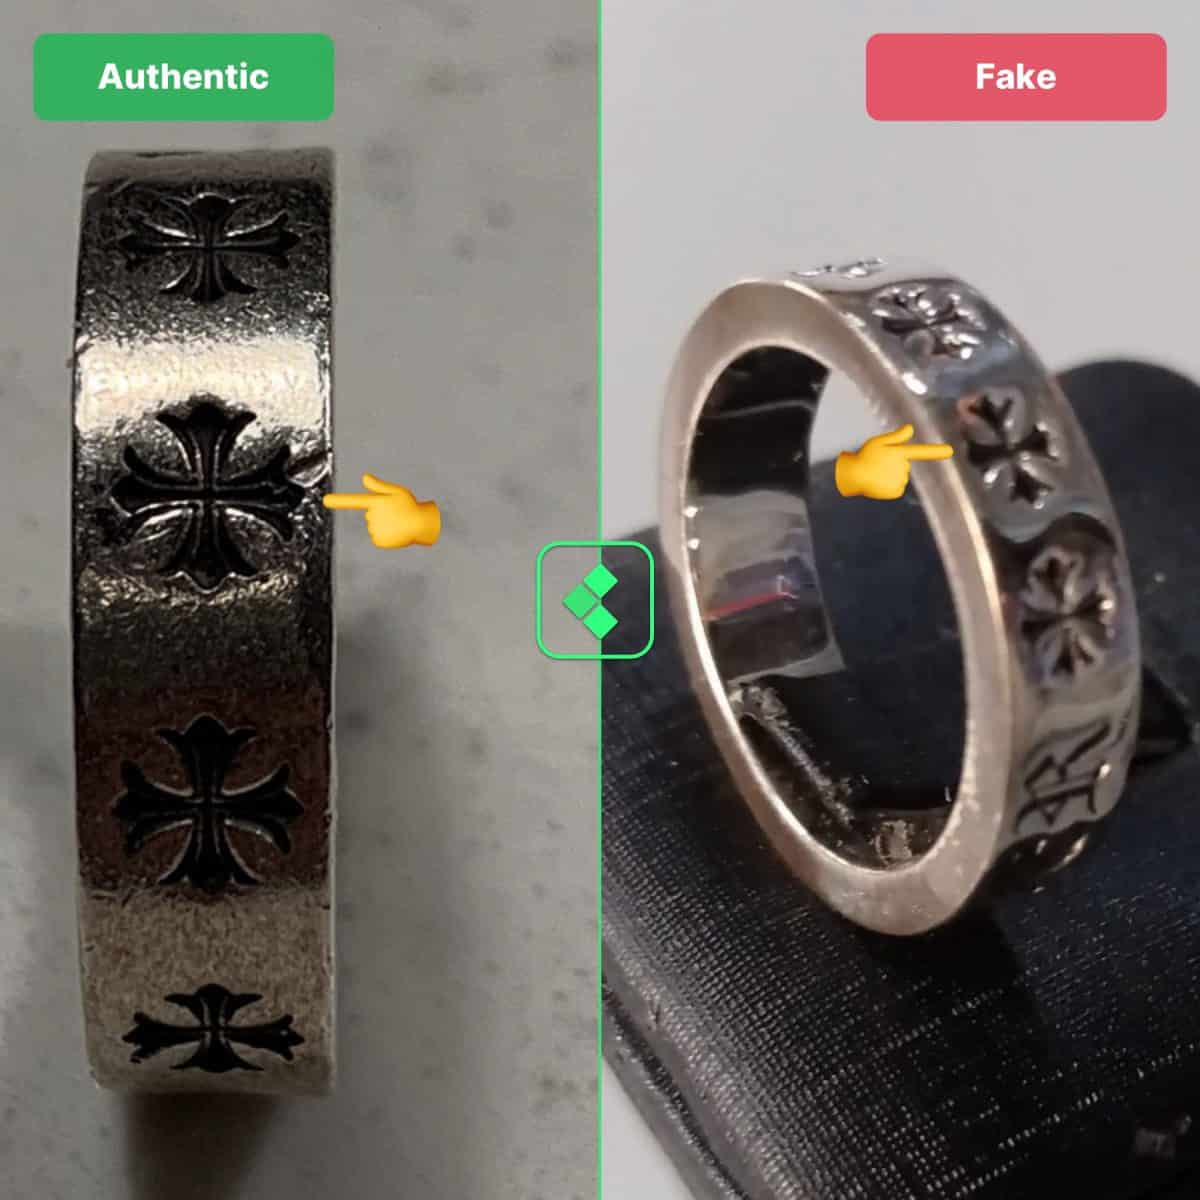 chrome hearts ring fake vs real